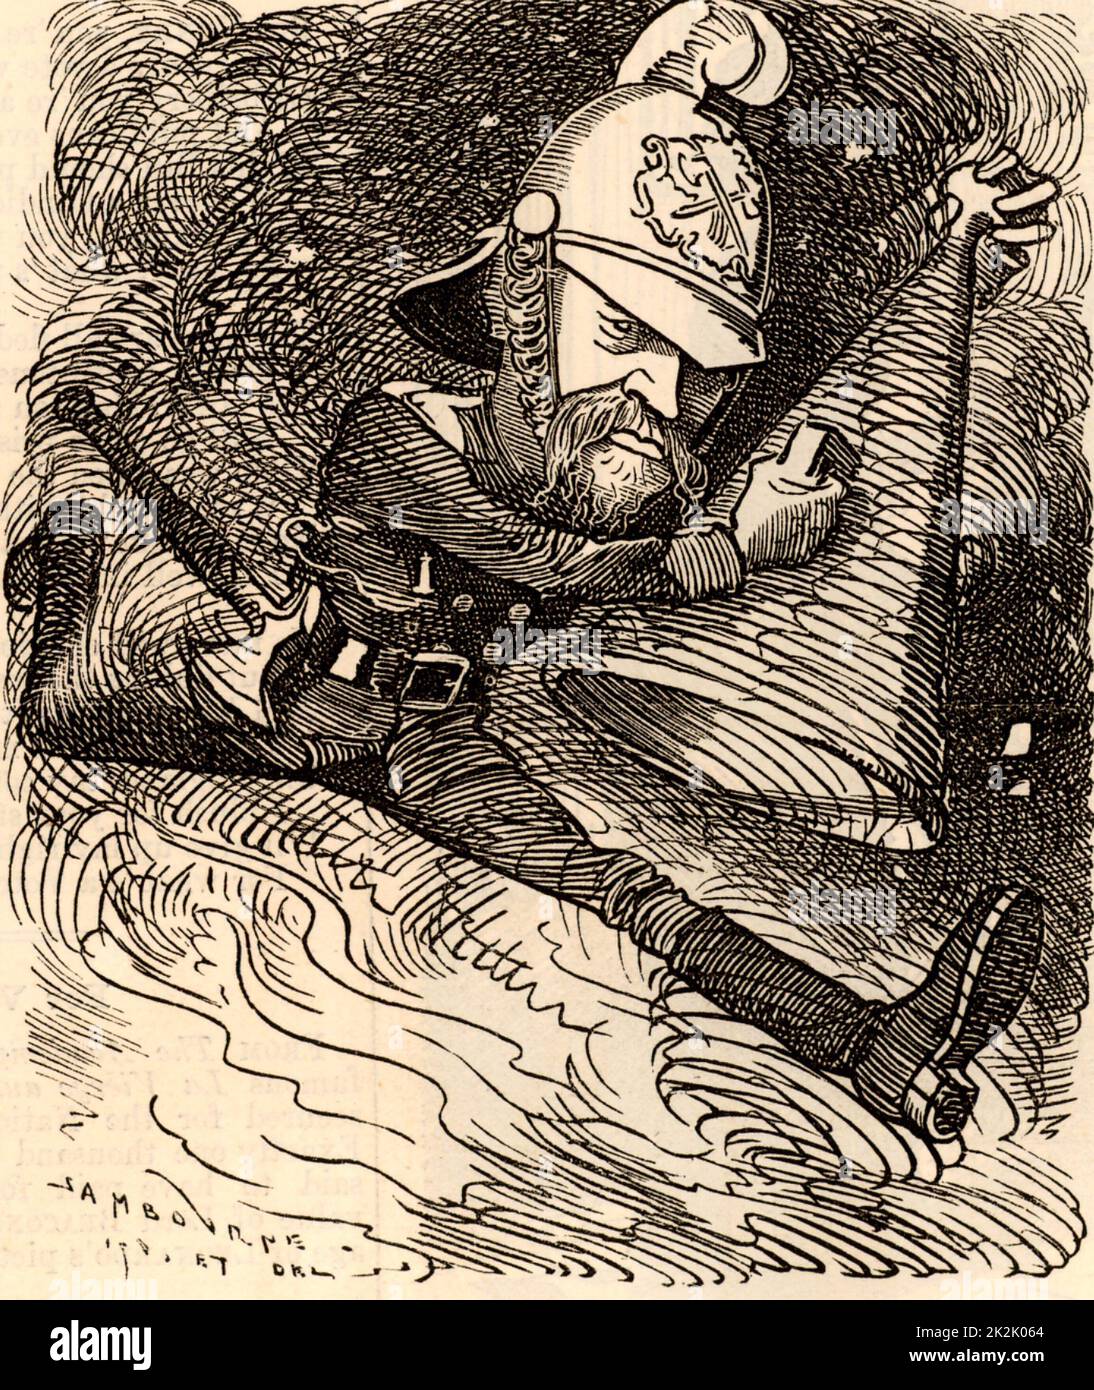 Massey Eyre Shaw (1830-1908), soldat irlandais qui ont servi dans l'armée britannique. Largement connu comme le "Capitaine Shaw', il a été fondateur et directeur de la région métropolitaine (désormais Londres) Fire Brigade 1861-1891. Dans la région de Gilbert et Sullivan light opera 'Iolanthe' la fée se demande si le capitaine Shaw's brigade avec 'cascade' froide pourrait étancher son amour. Edward Linley Sambourne caricature de poinçon dans la série de portraits de fantaisie du 'Punch' (Londres, 22 janvier 1881). Banque D'Images